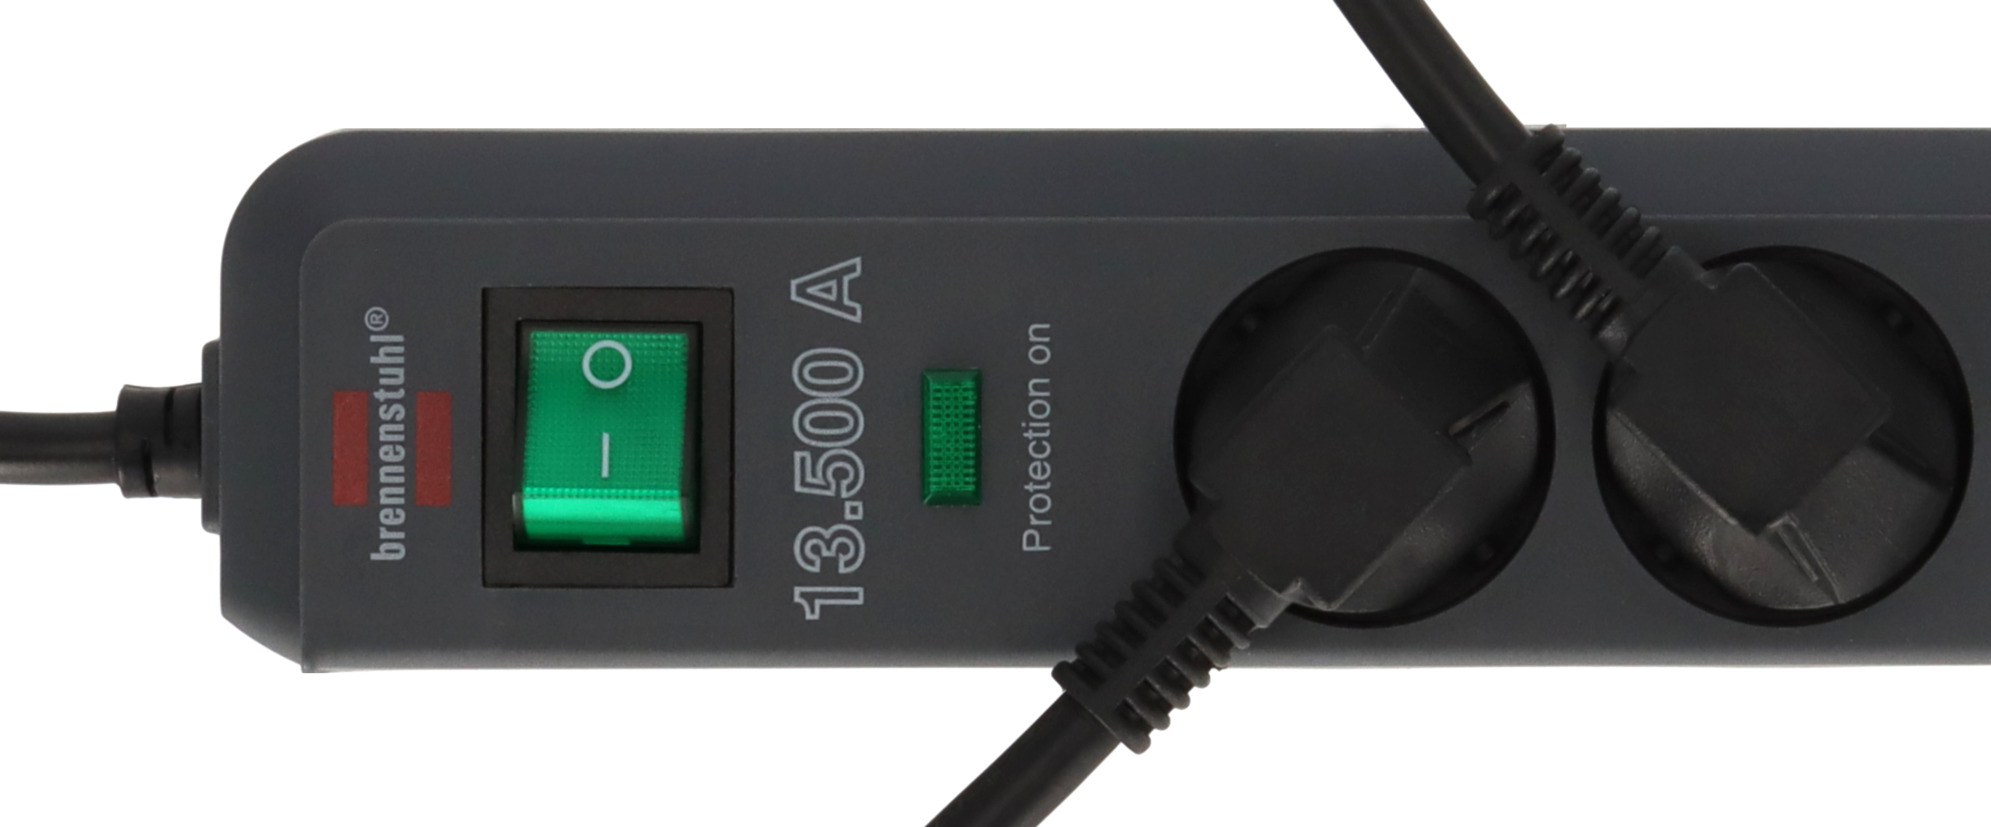 Multiprise Premium-Line avec parasurtenseur 60000A, prises-chargeur USB,  filtre antiparasites, 6 prises, 3m H05VV-F 3G1,5, noir